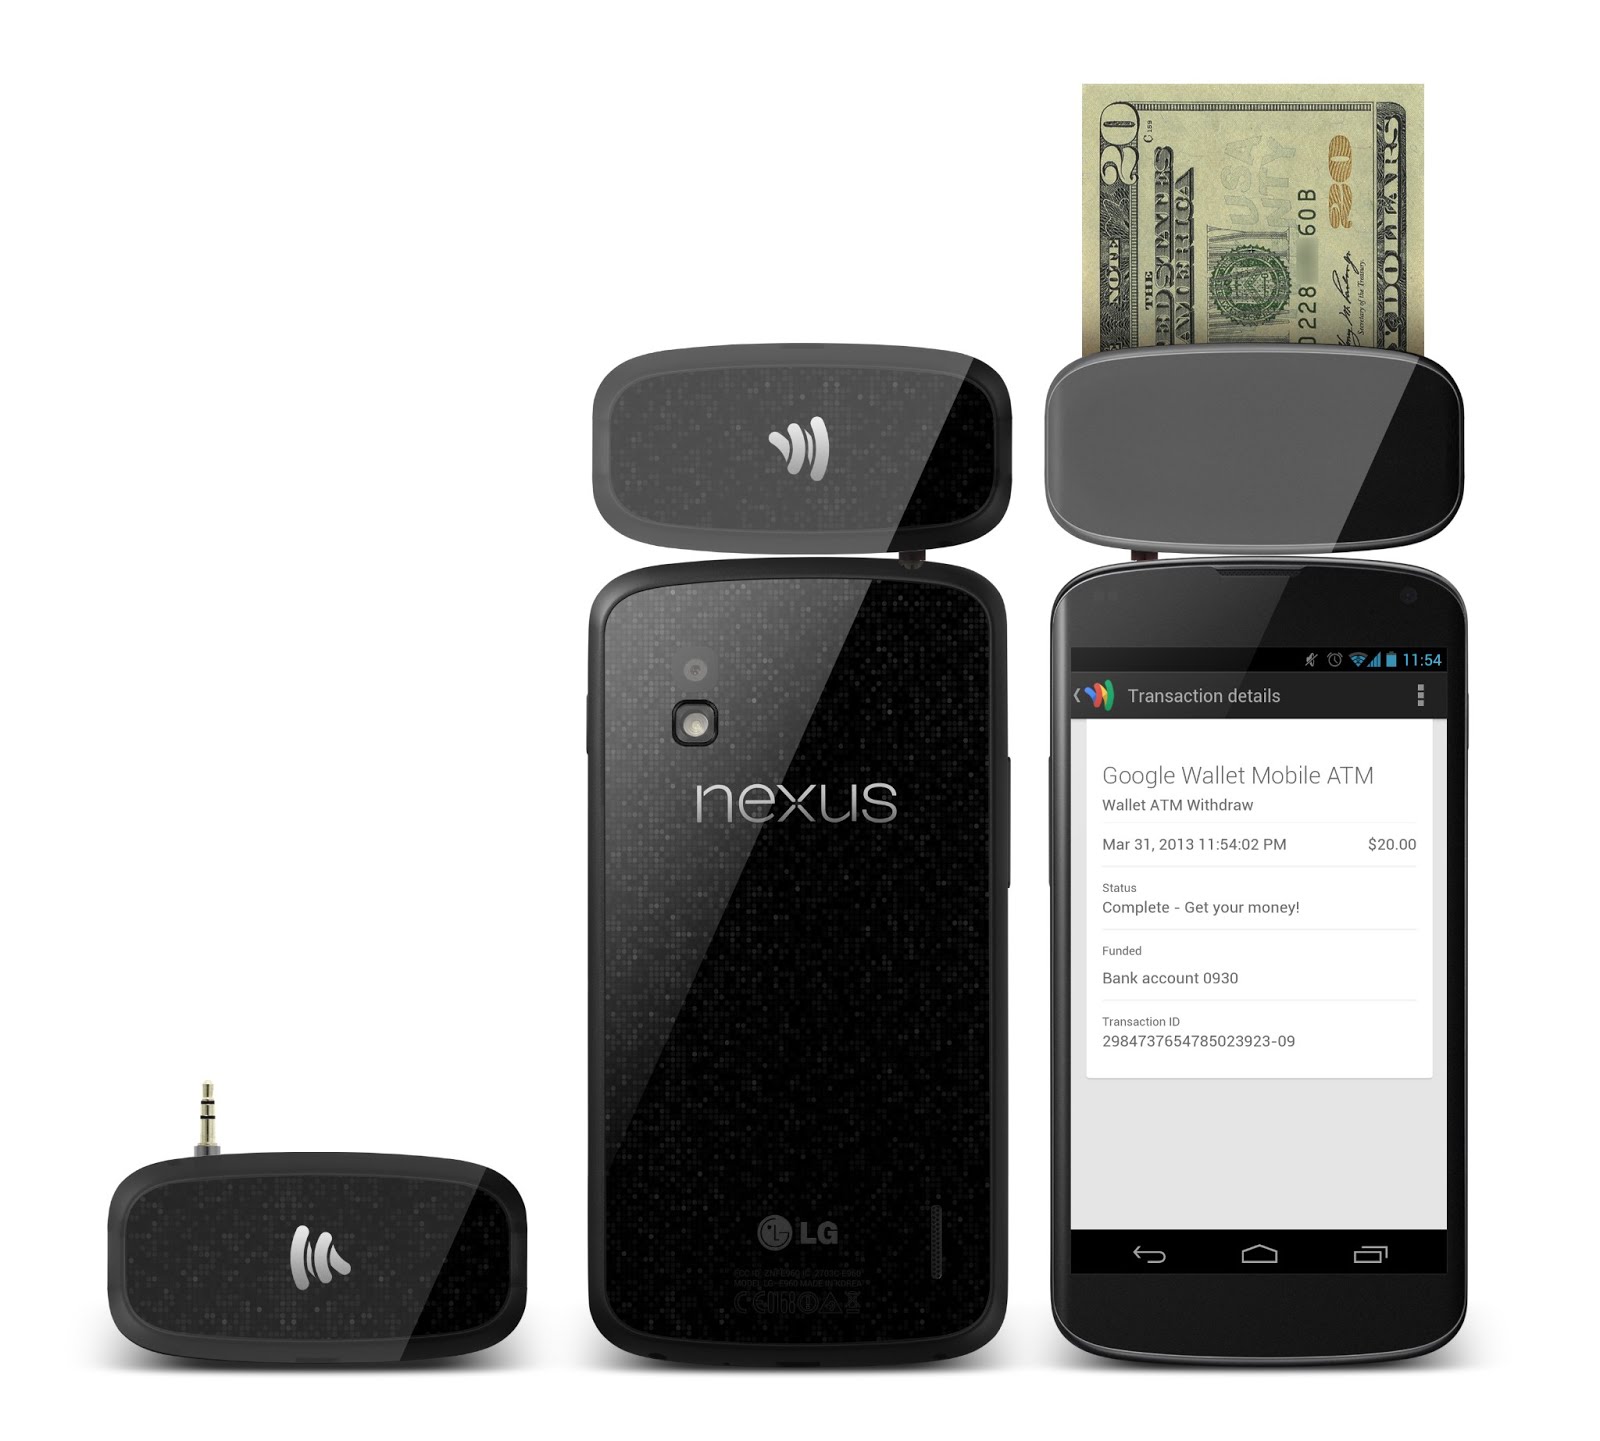 Google Wallet Mobile ATM